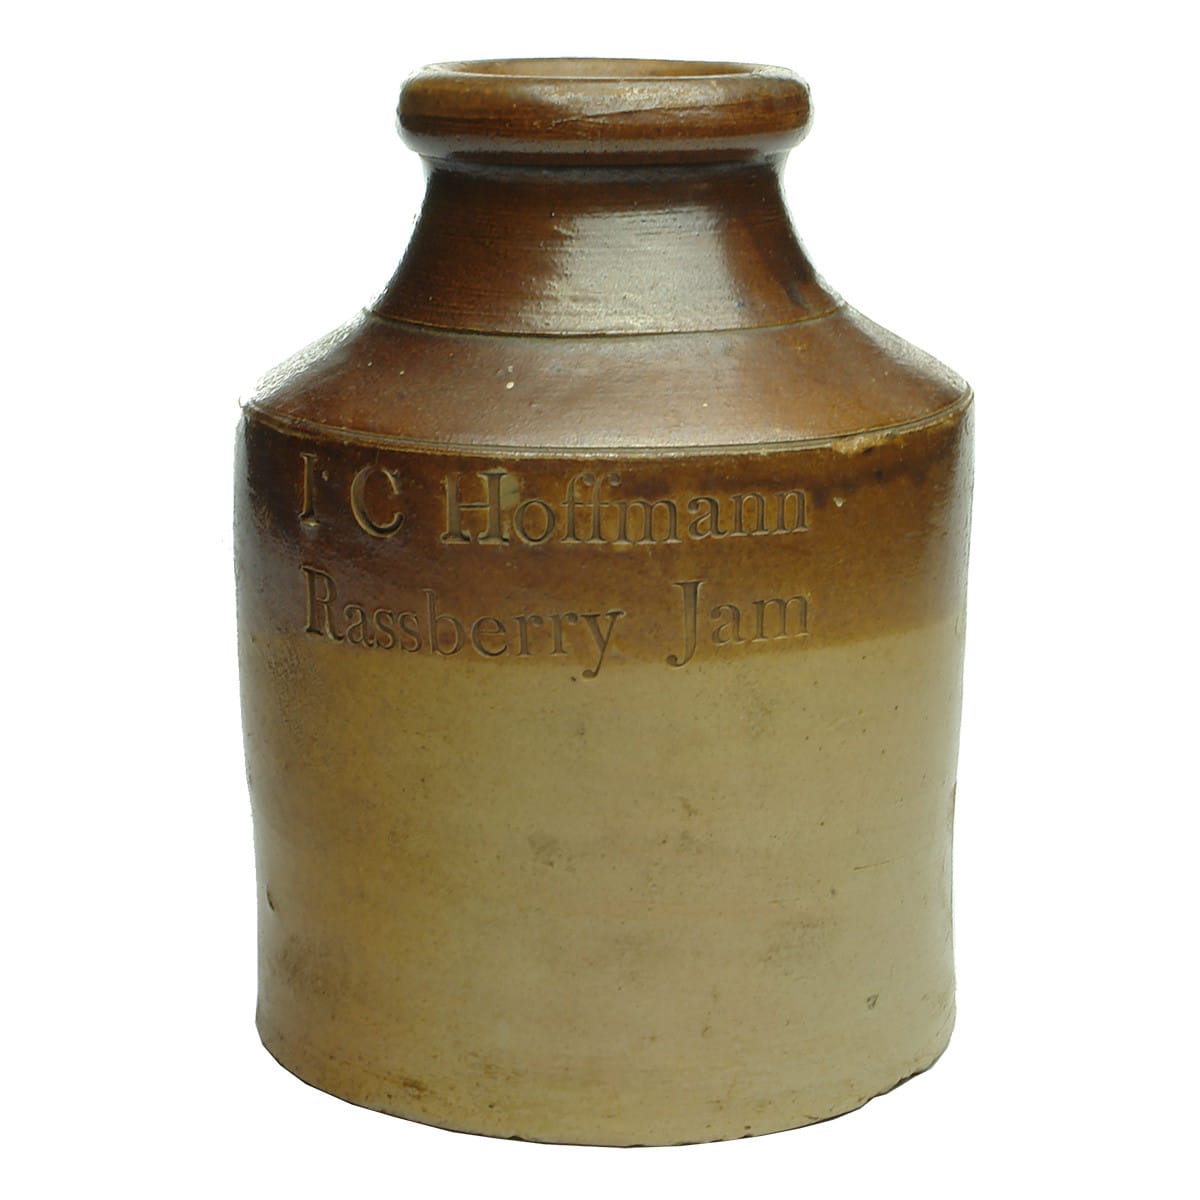 Stoneware Jam Jar. I C Hoffmann, Rassberry Jam. Two tone. Large size. Impressed.